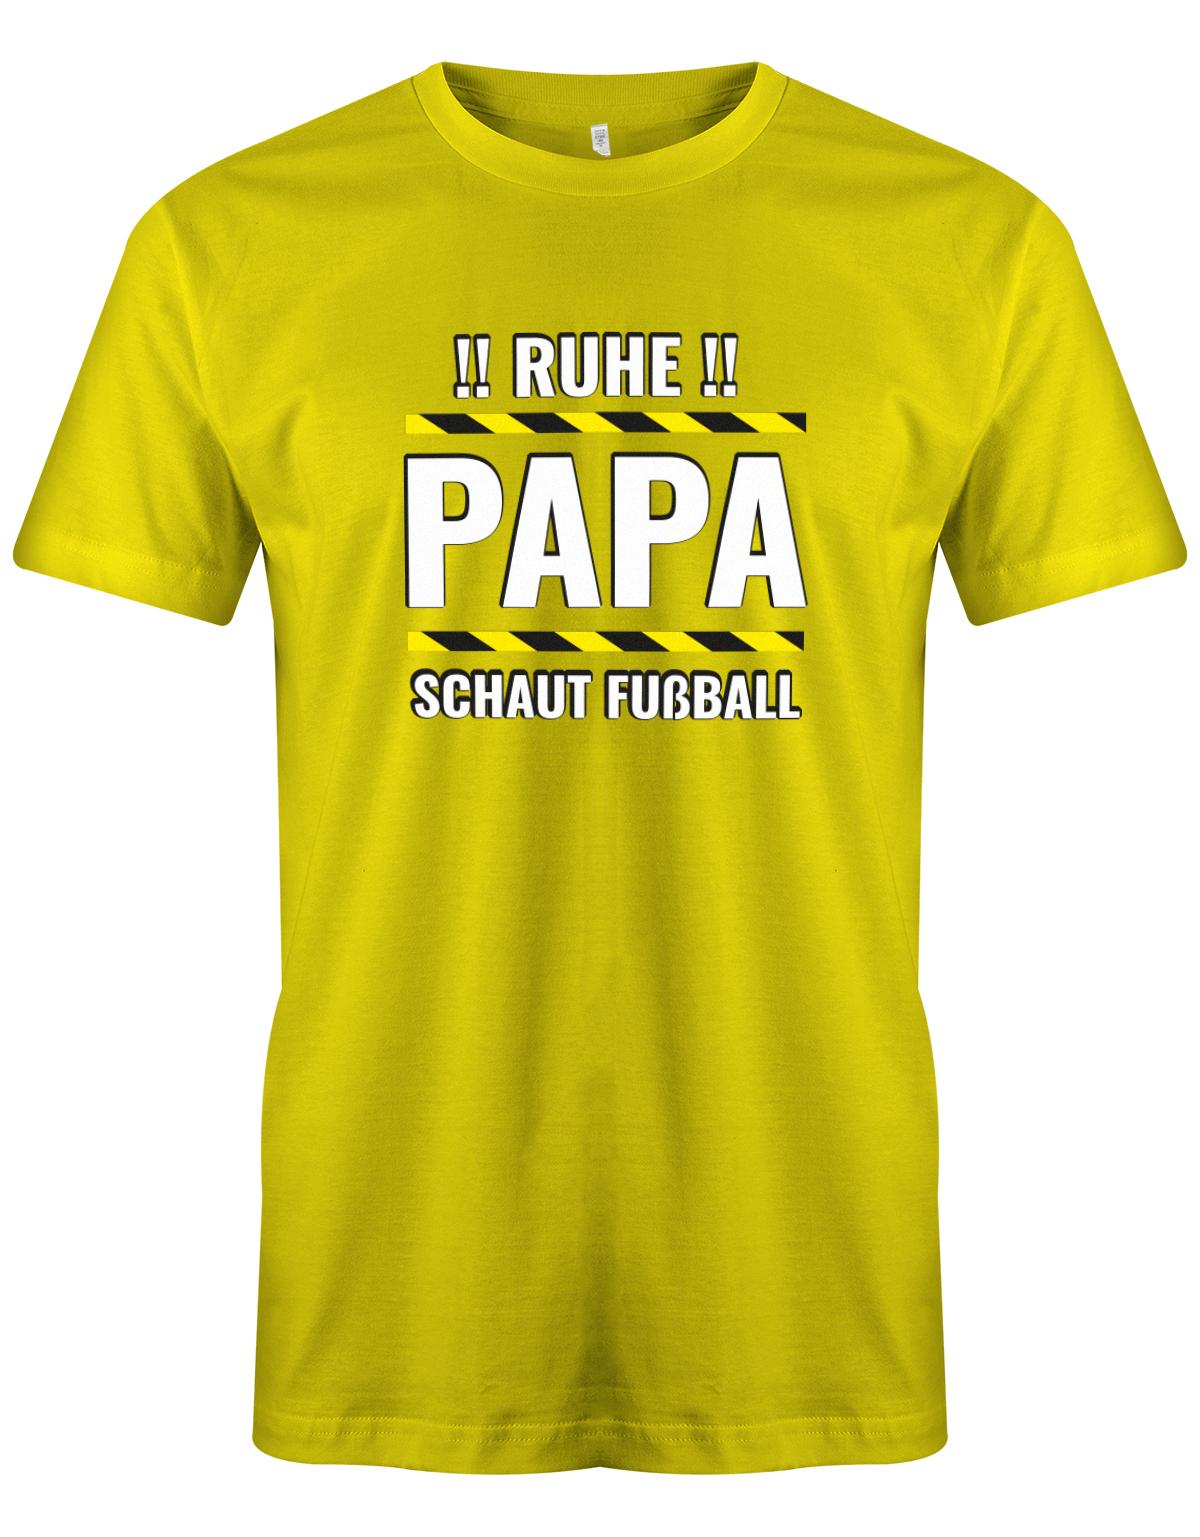 Ruhe-Papa-schaut-Fussball-Herren-Shirt-Gelb